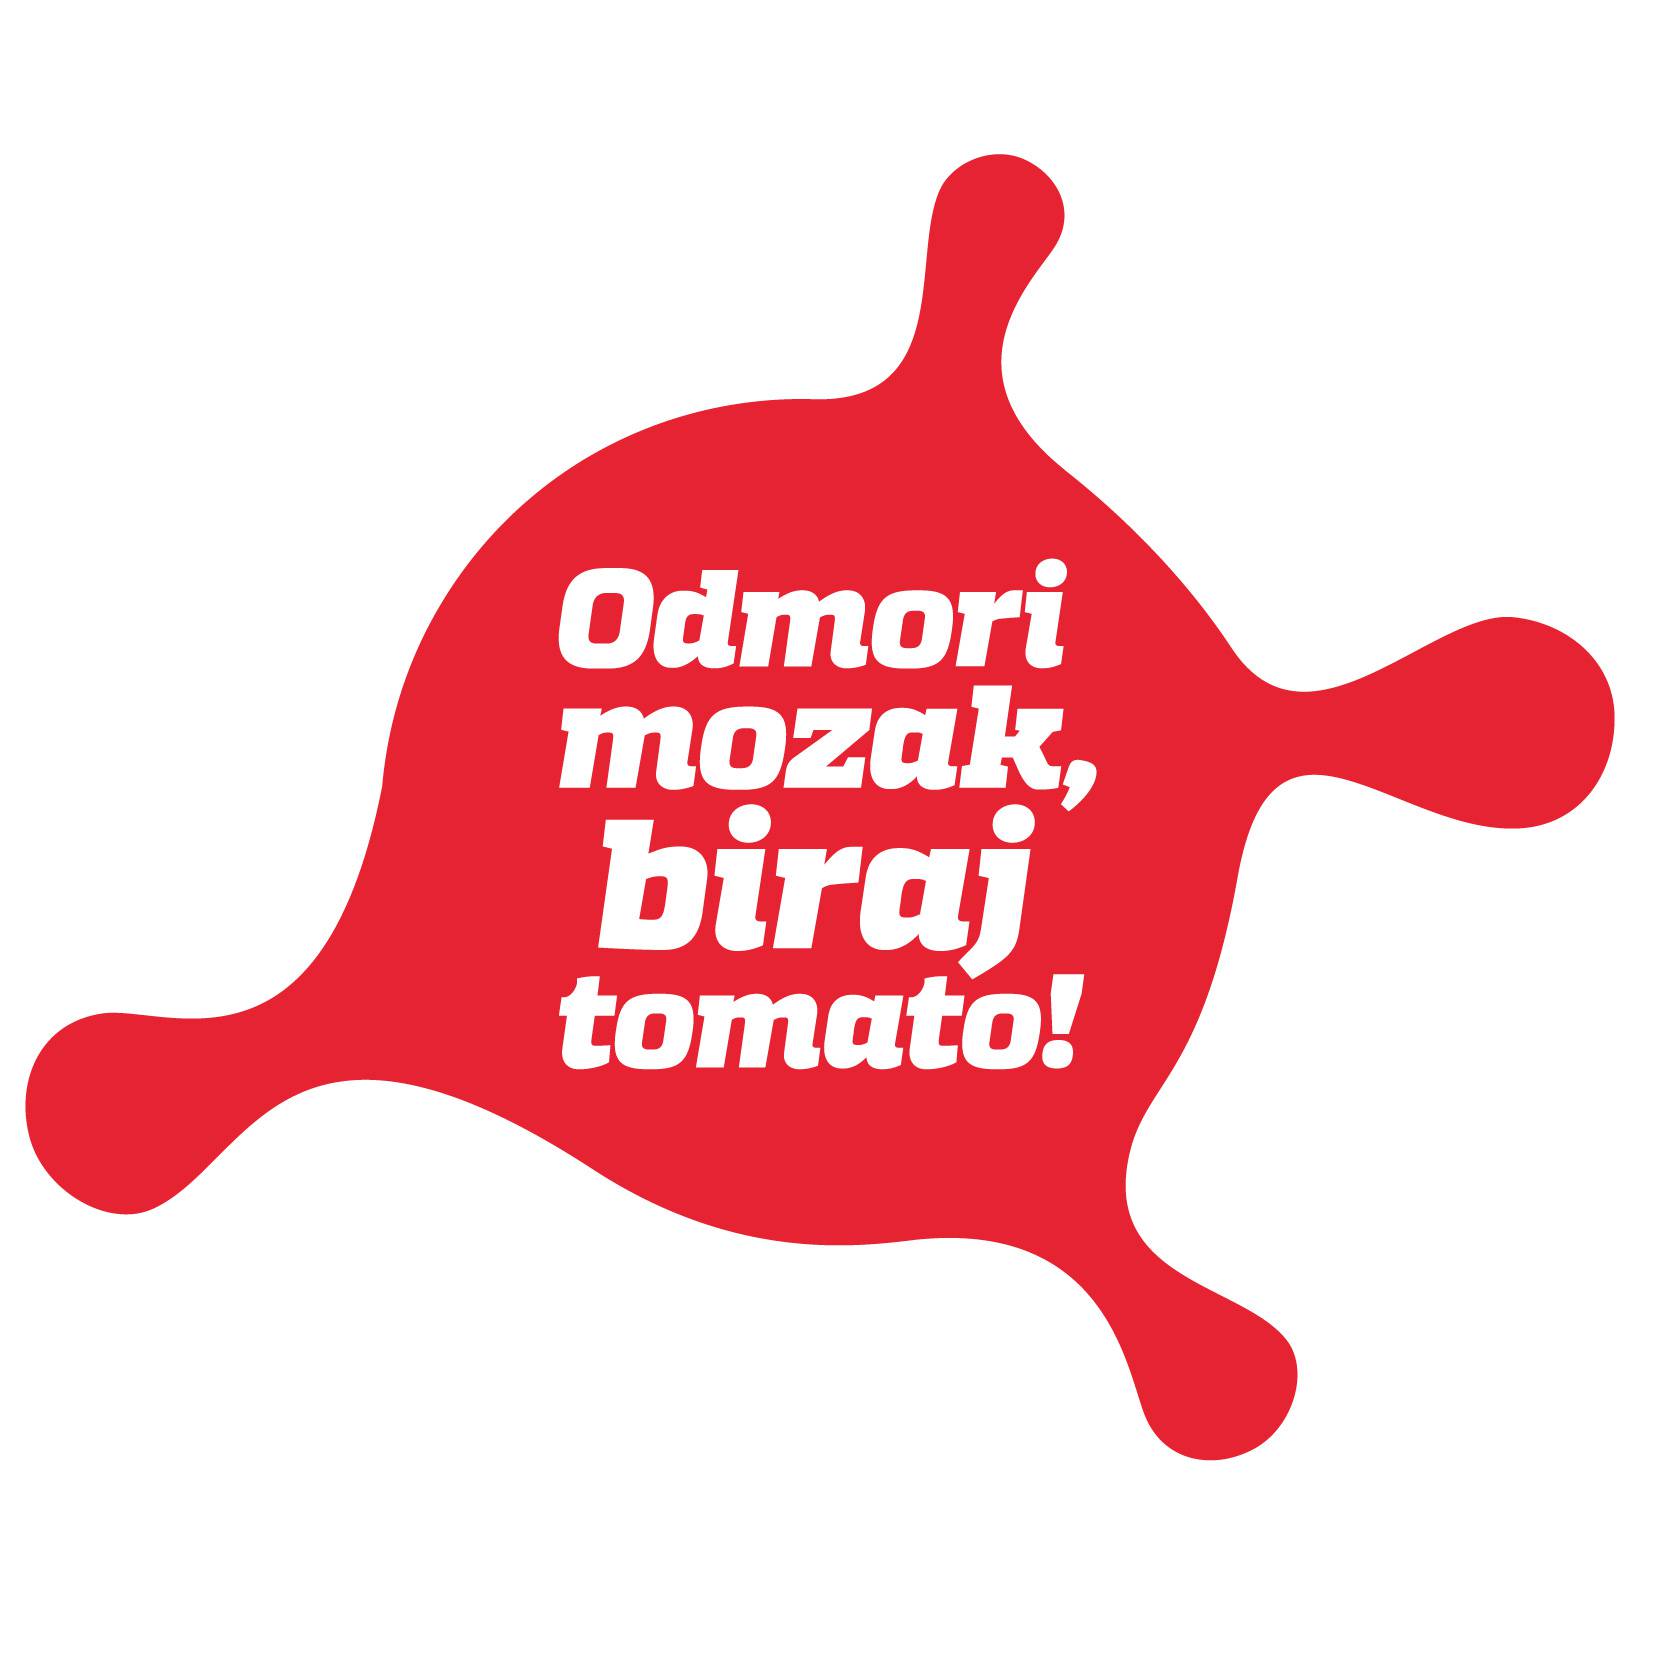 Tomato sada u svim tarifama nudi surfanje po 4G brzinama